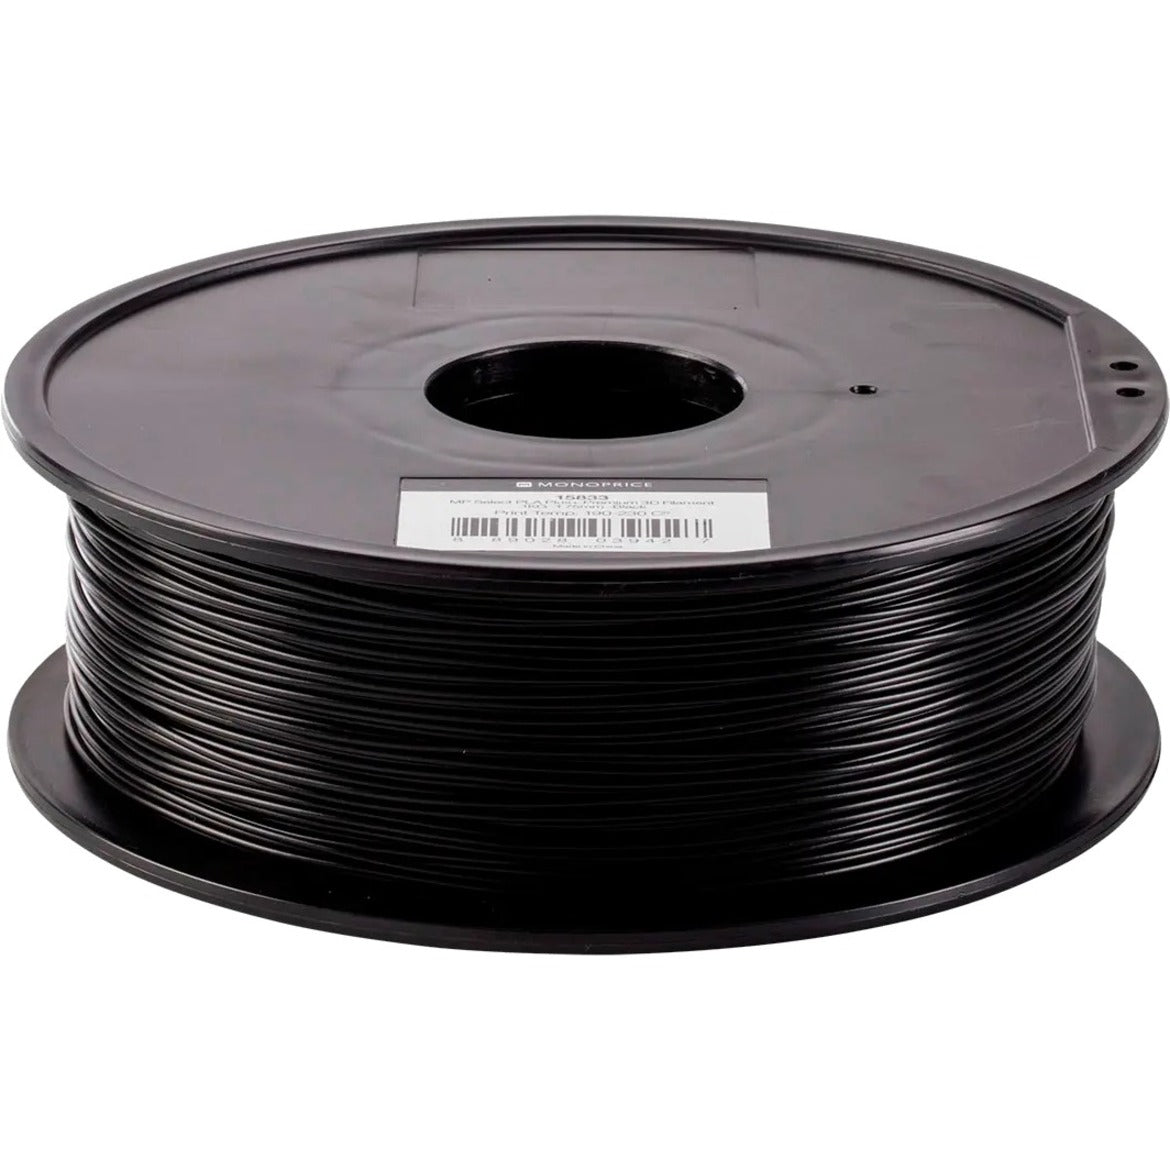 Monoprice 15833 MP Select PLA Plus+ Premium 3D Filament 1.75mm 1kg/Spool, Black